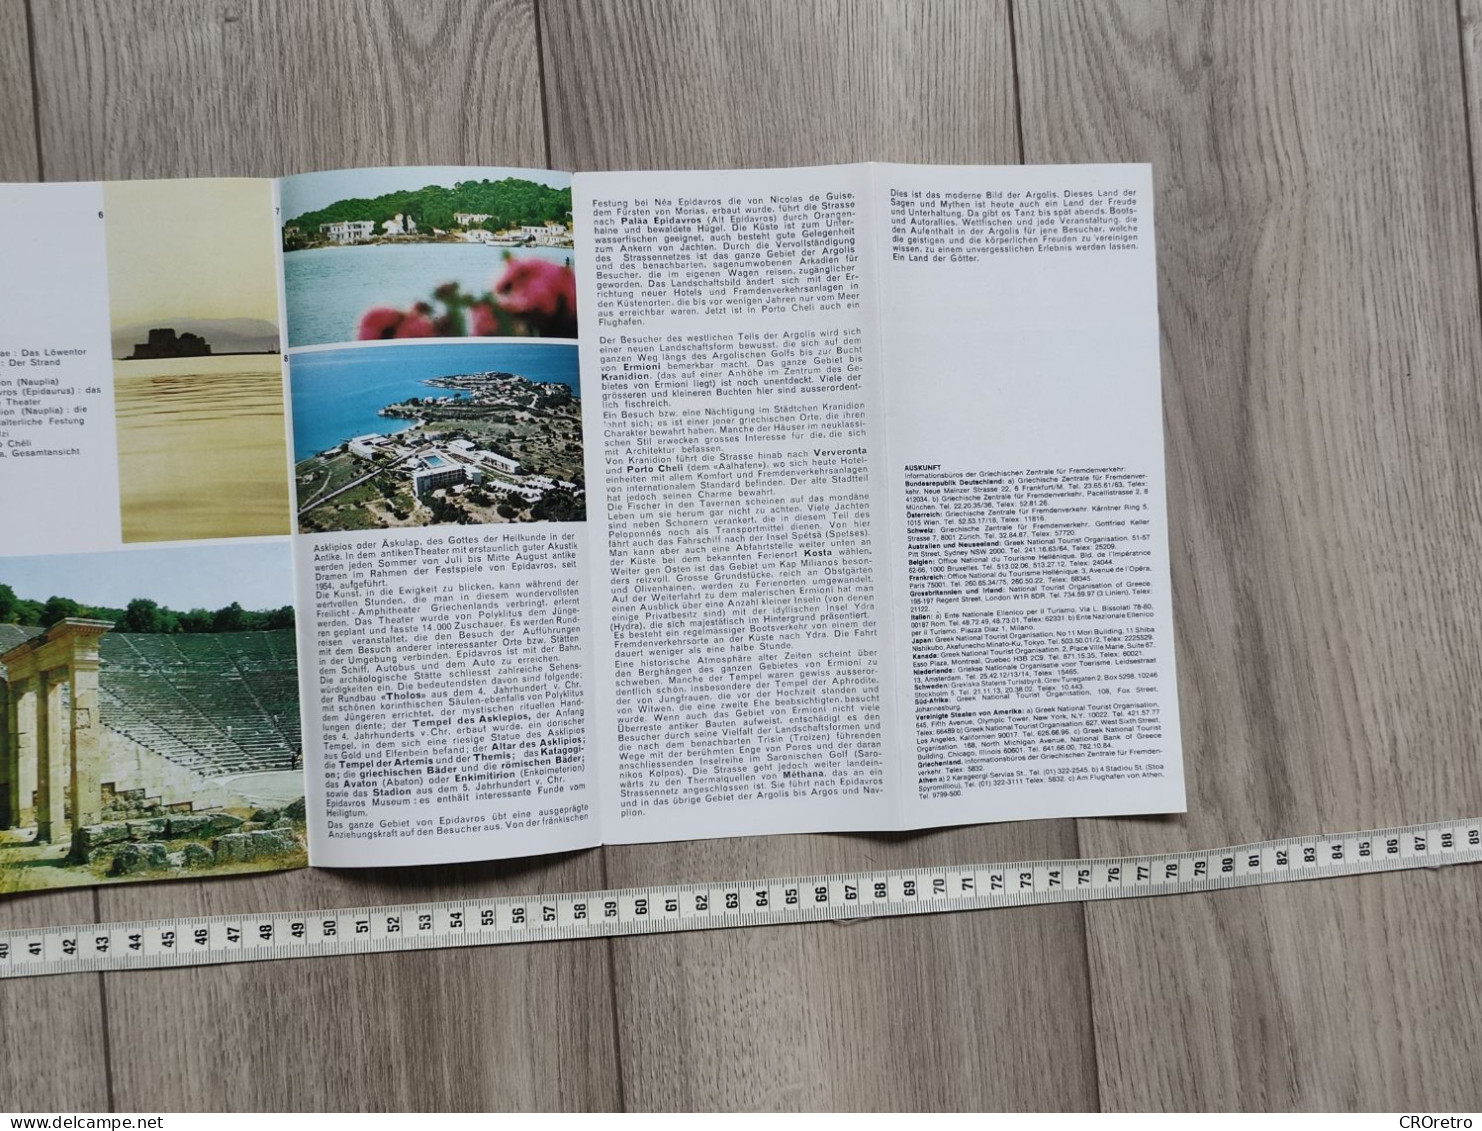 GRIECHENLAND ARGOLIS / GREECE, vintage tourism brochure, prospect, guide (pro3)